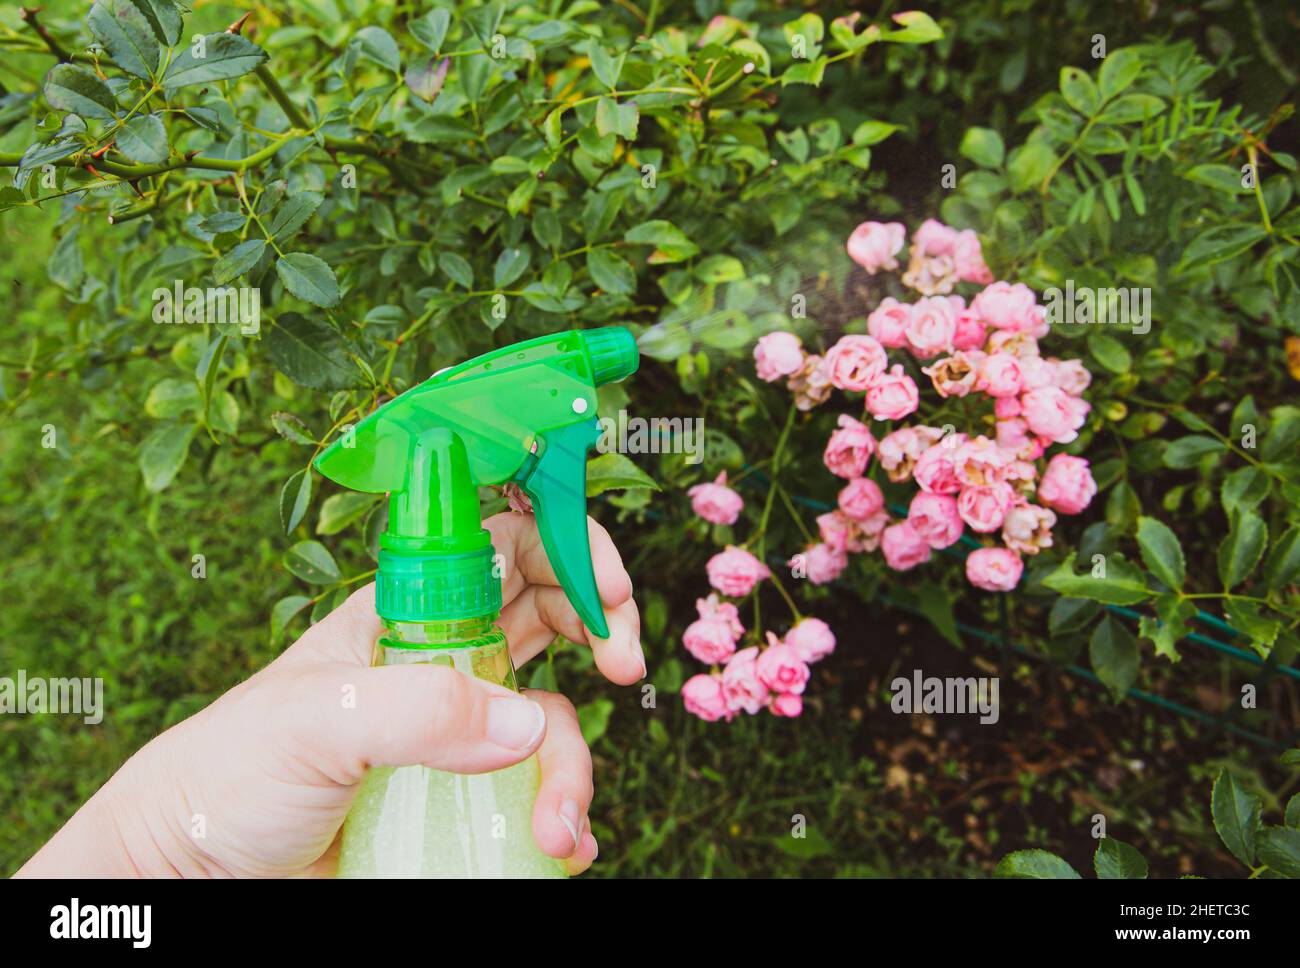 Nahaufnahme einer Person, die im Garten des Hauses selbstgebasteltes Insektenspray verwendet, um Rosen vor Insekten zu schützen. Stockfoto